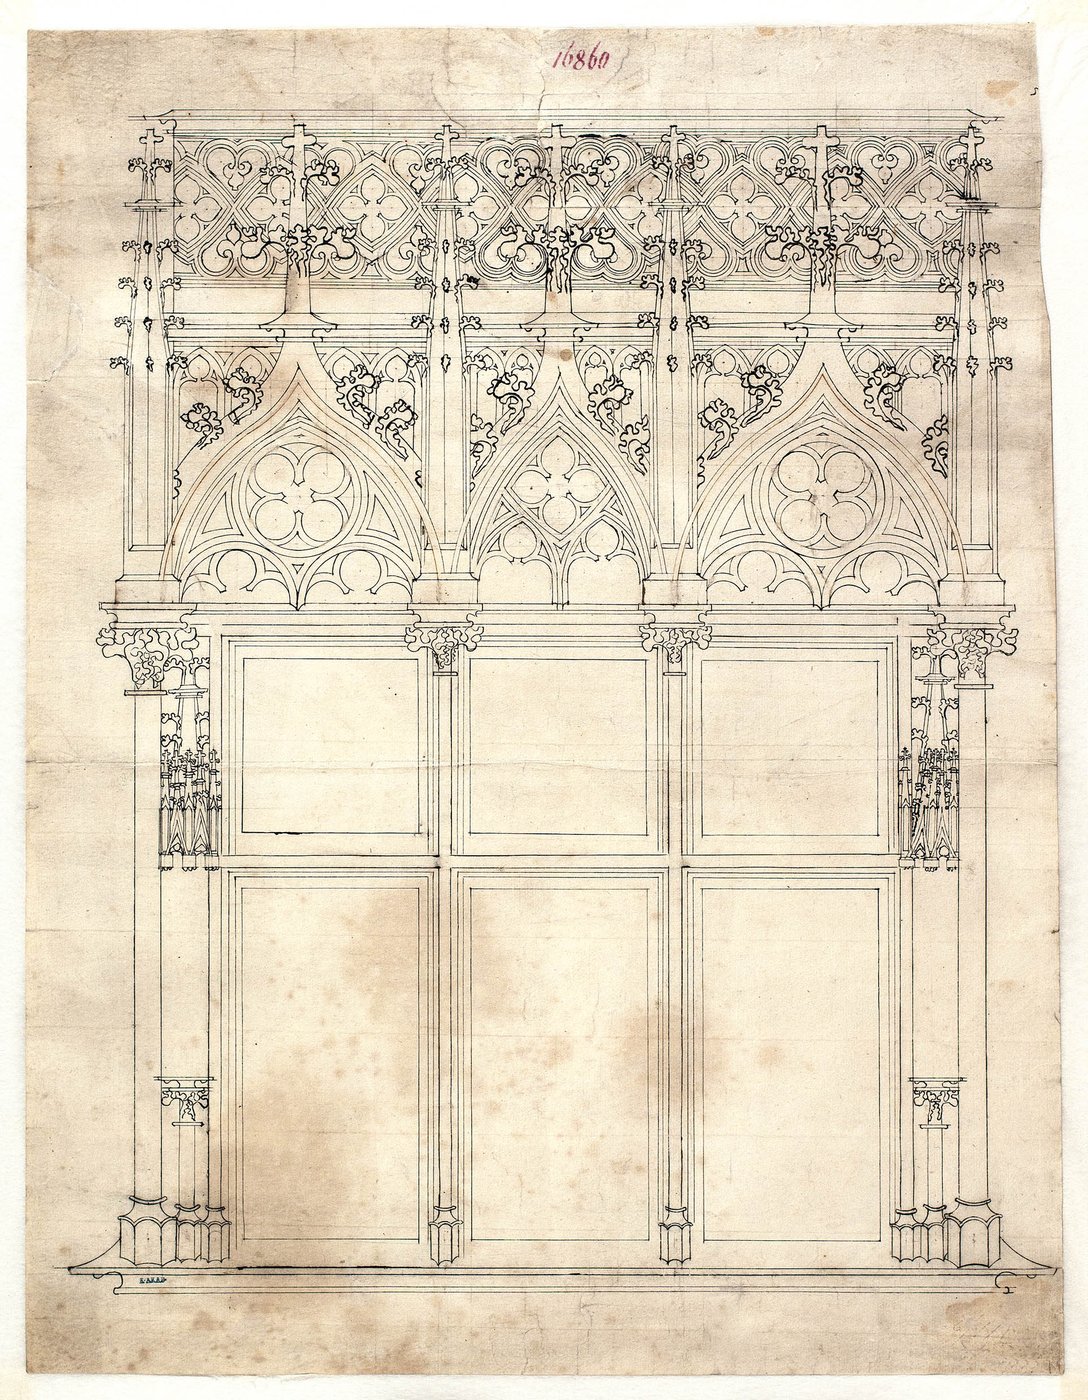 Die Zeichnung zeigt einen Entwurf für einen dreiteiligen Fenstererker für das Wiener Rathaus mit gotischem Maßwerk.